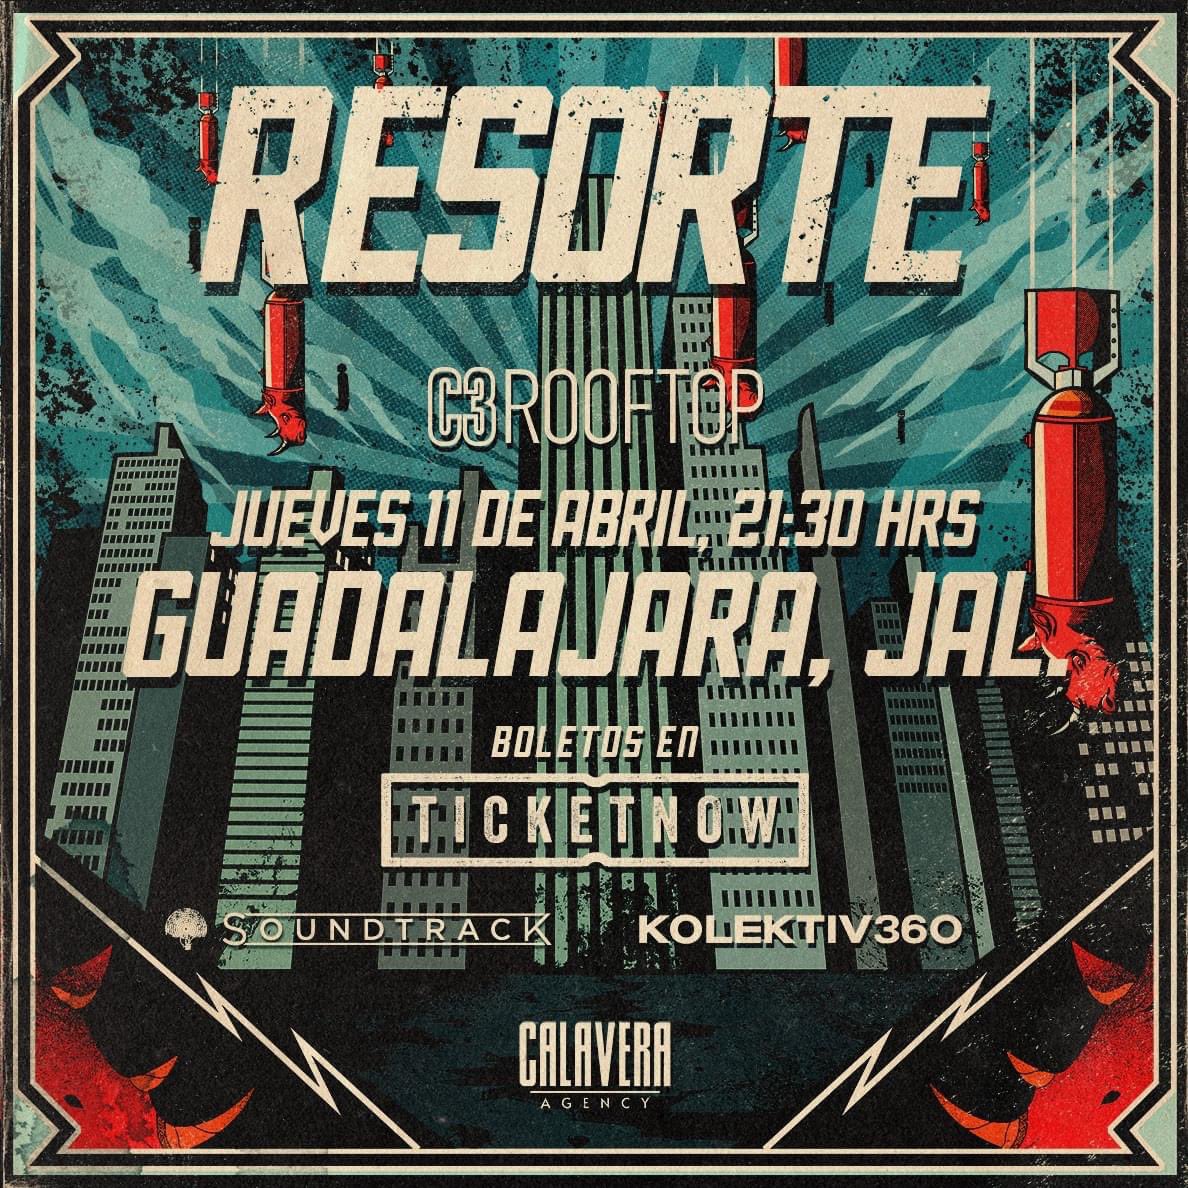 #CONCIERTO Regresa @Resorte_Oficial a #Guadalajara este próximo 11 de abril al @C3Mexico #RoofTop a las 21:30 horas. Boletos en @ticketnow_